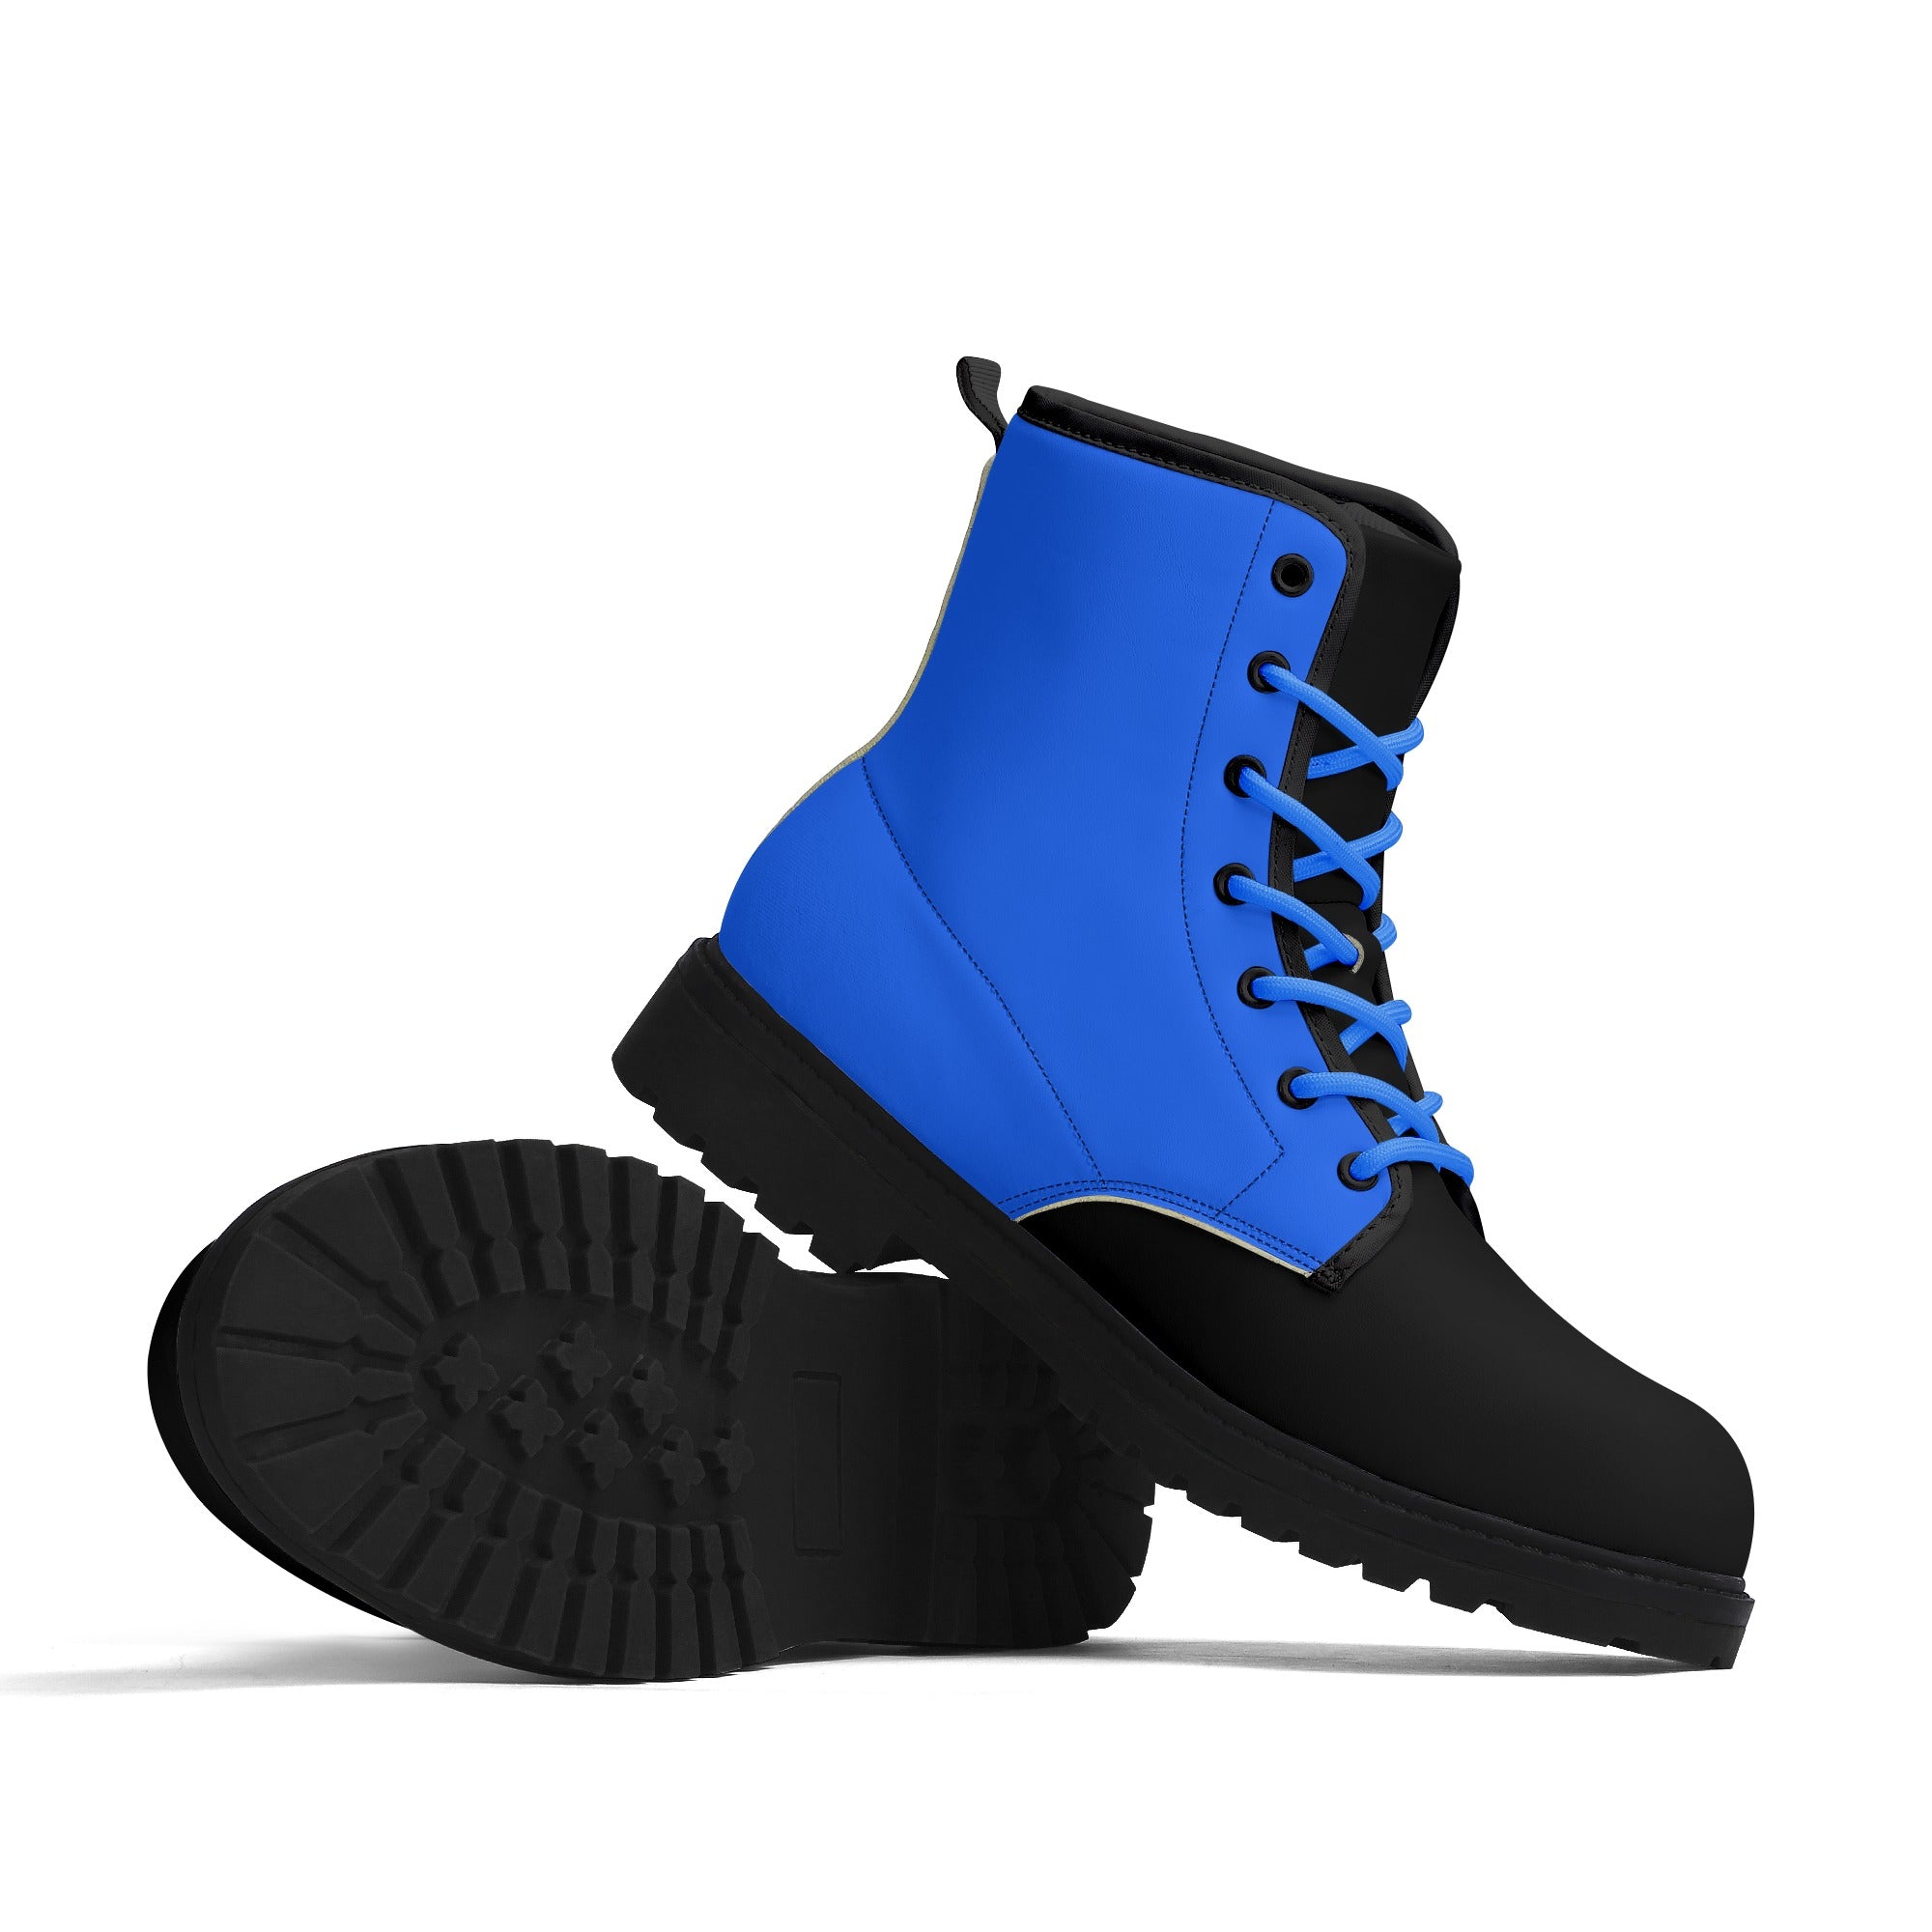 नीले और काले चमड़े के काले आउटसोल जूते